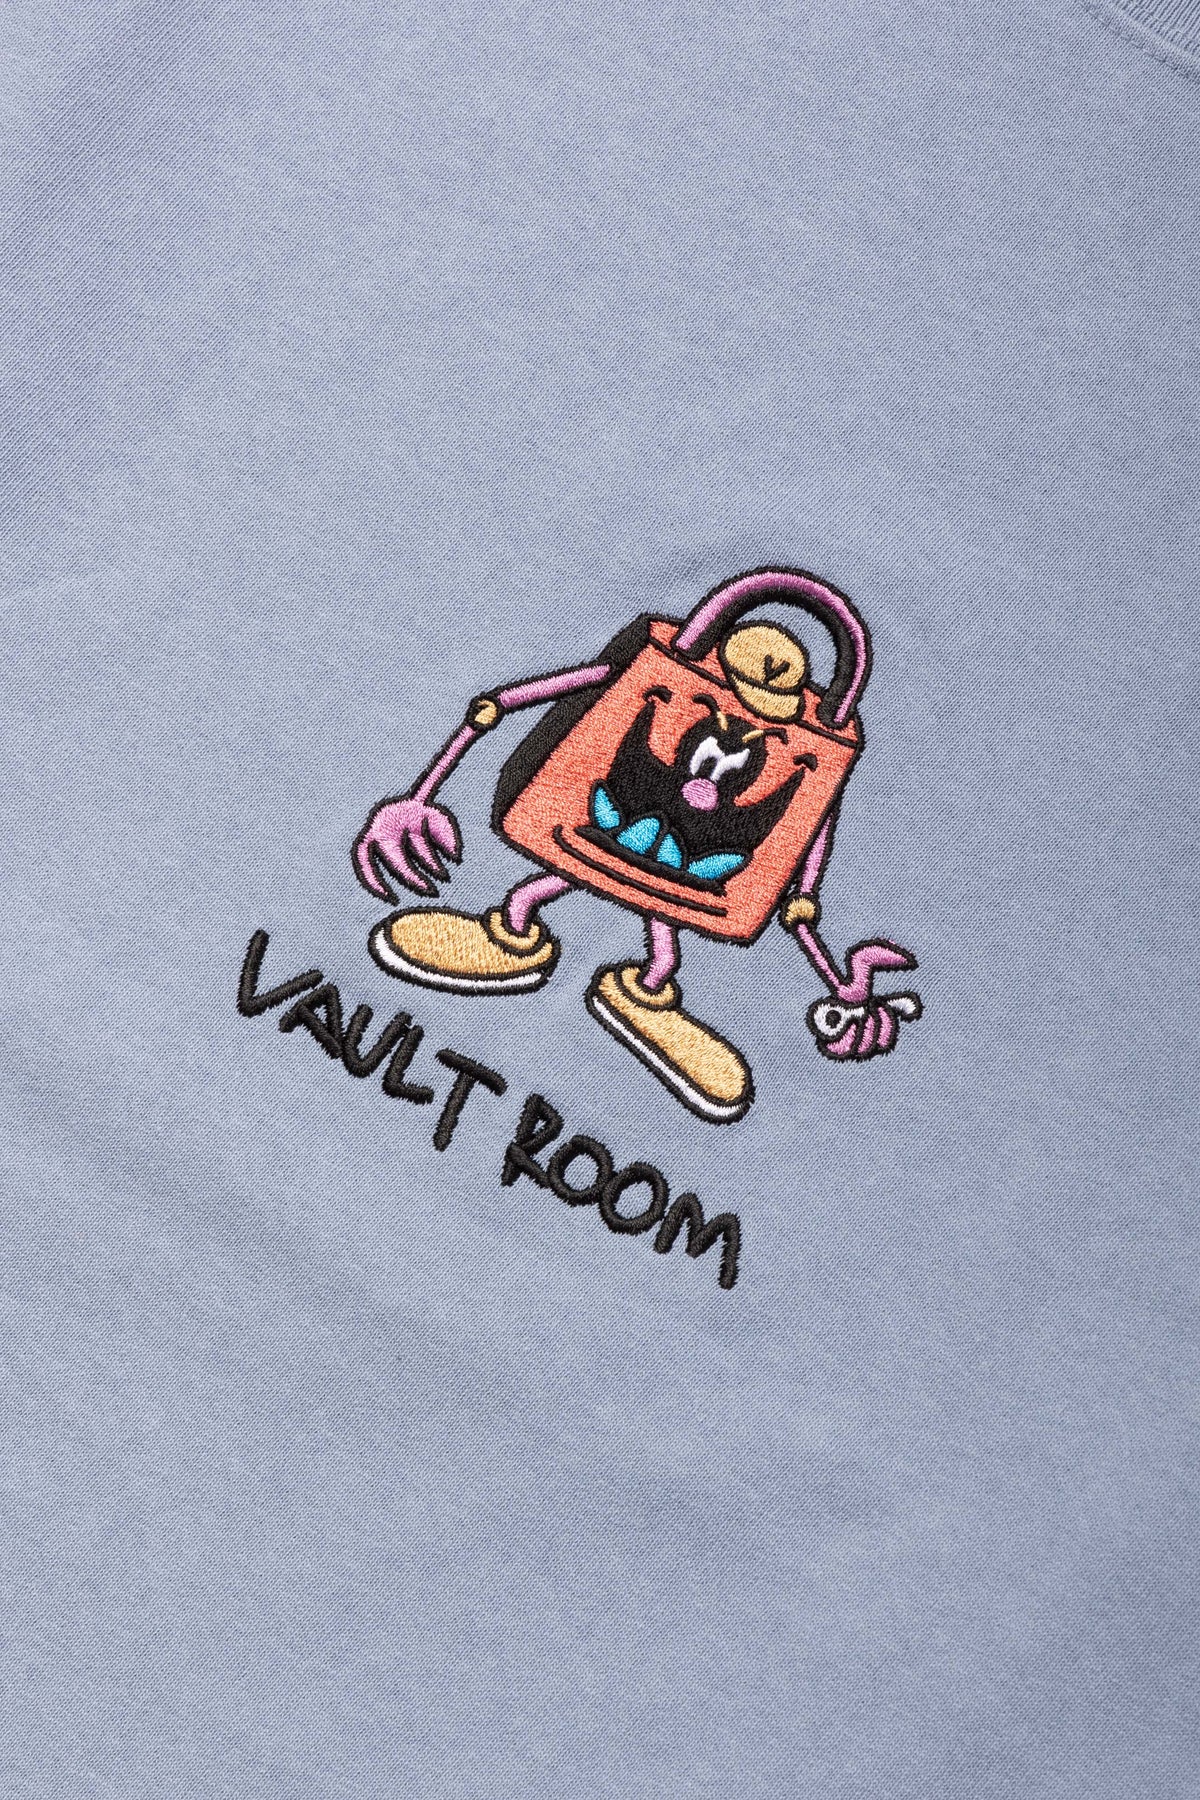 vaultroom DEVIL TEE / BLK